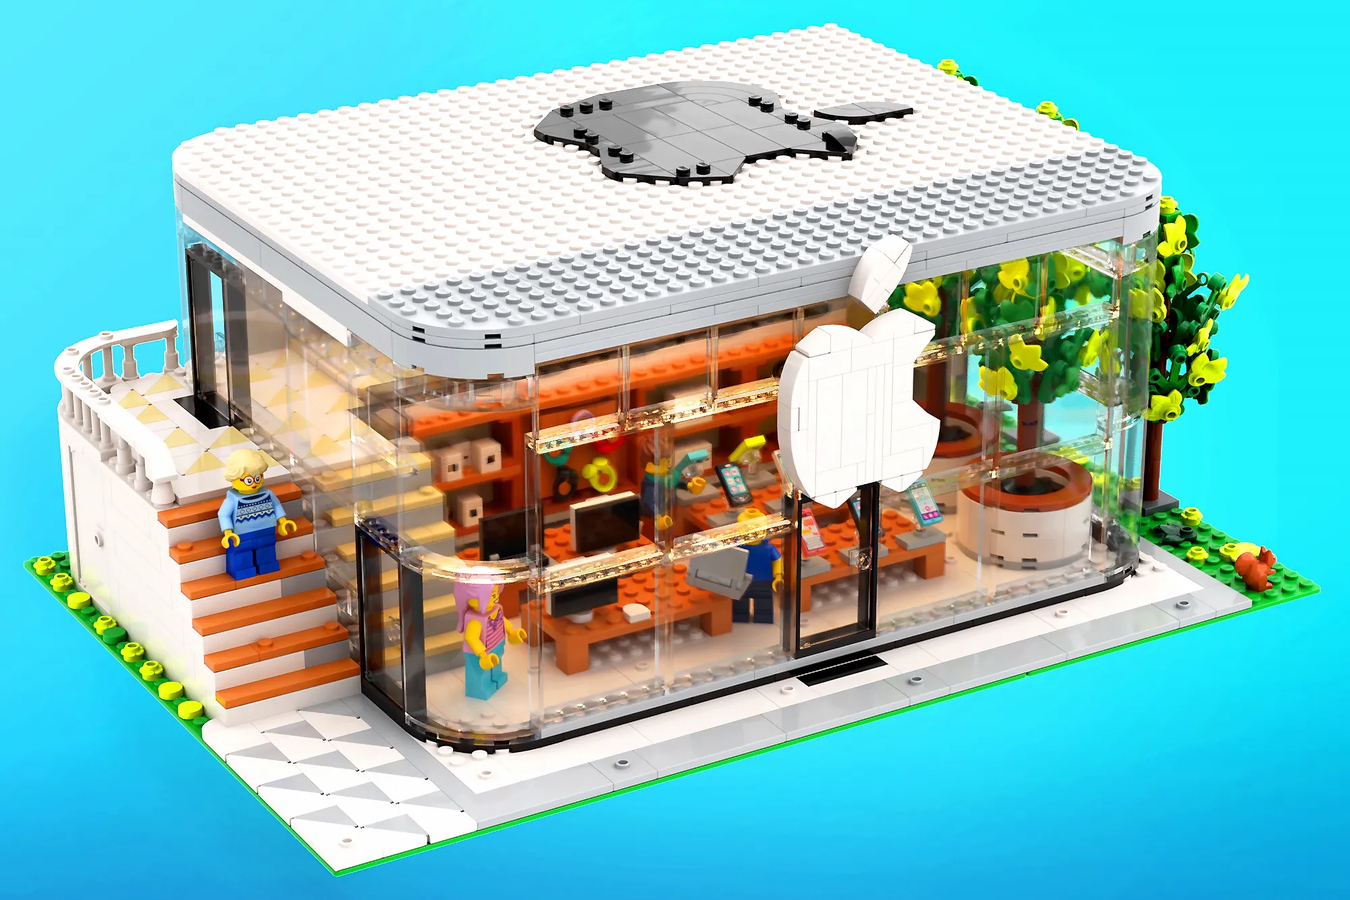 Un fan de Apple ha creado una maqueta del constructor de una Apple Store, LEGO podría ponerla a disposición de los minoristas